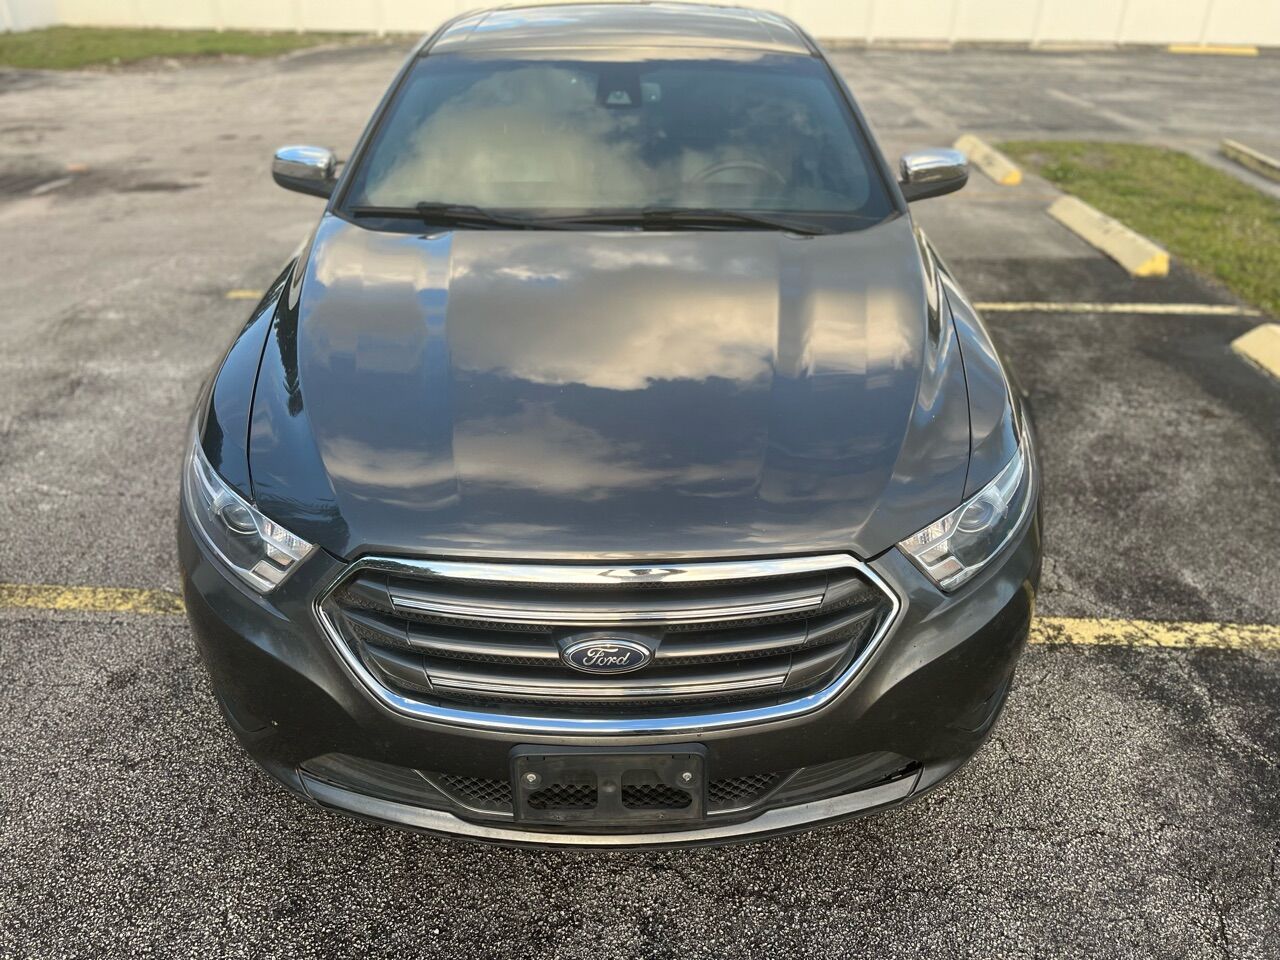 2017 FORD Taurus Sedan - $14,800